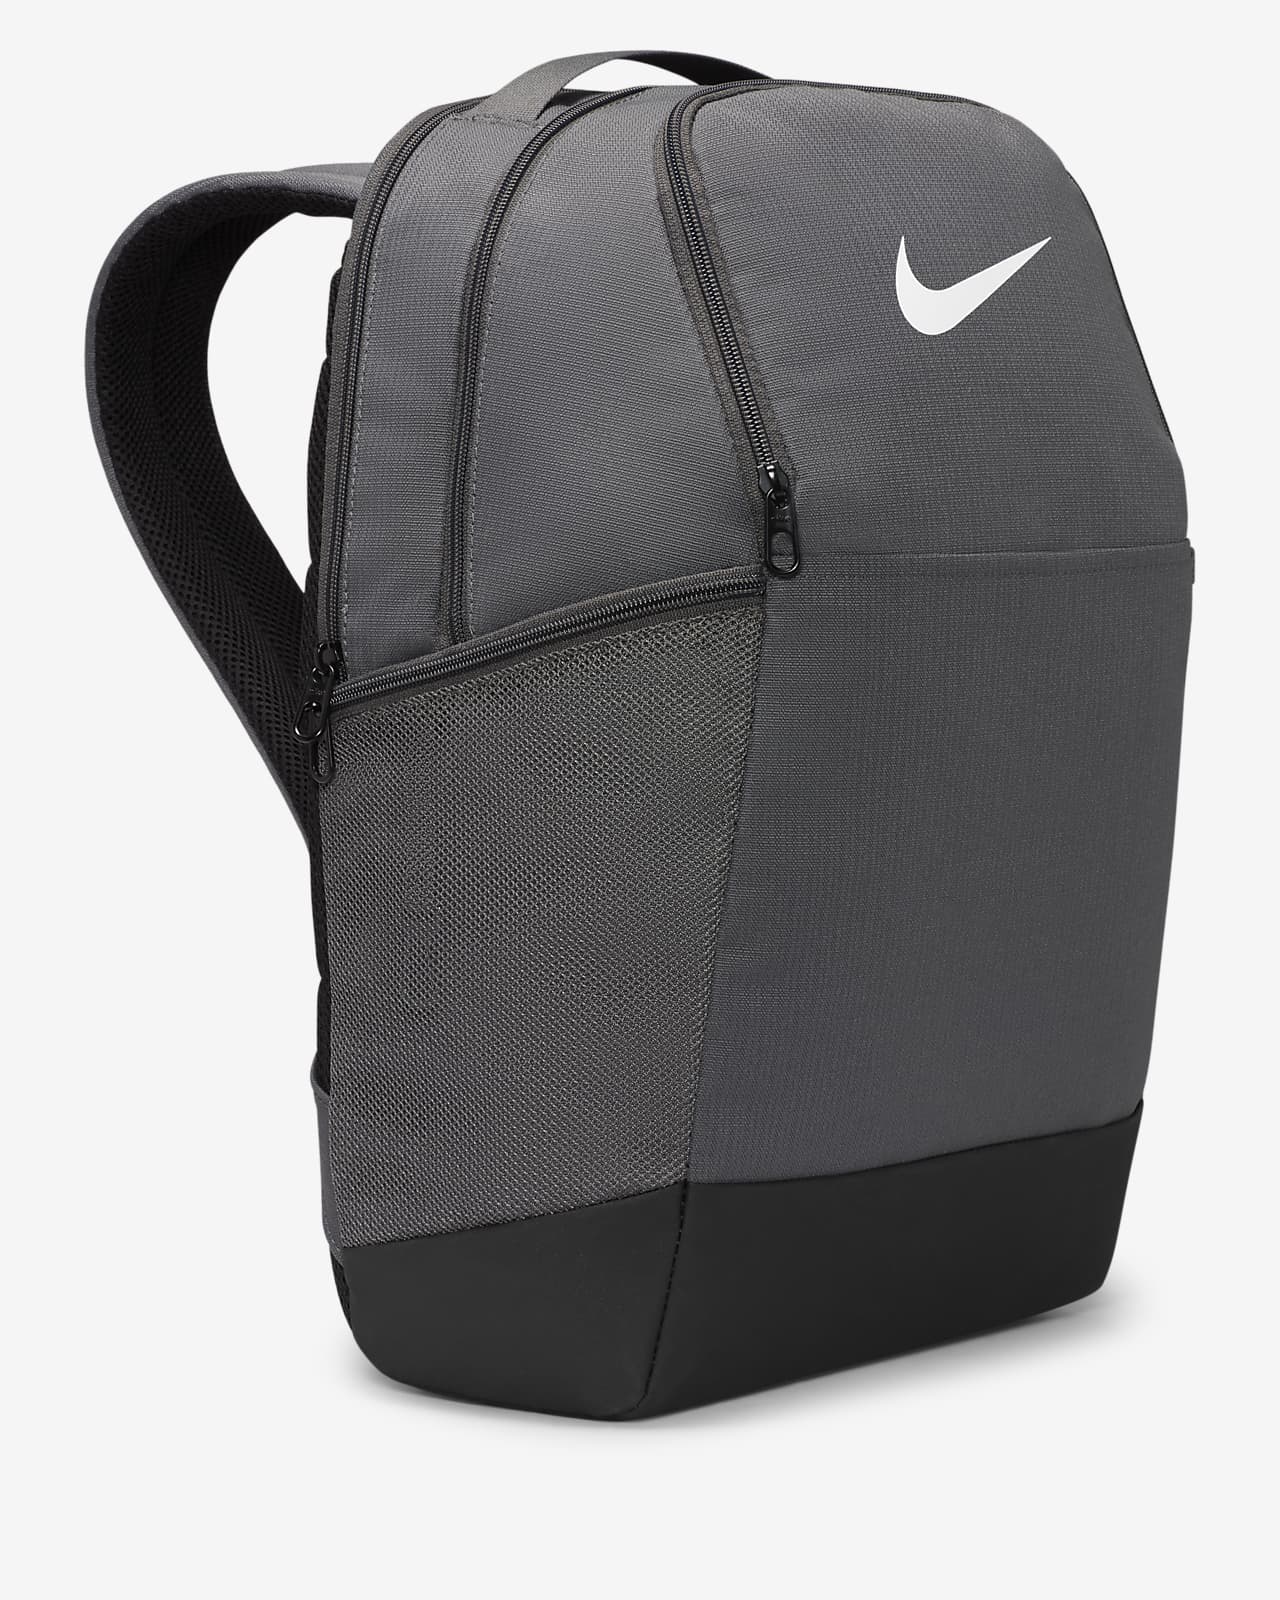 Mochila Nike Brasilia Backpack 9.5 24 Litros em Promoção